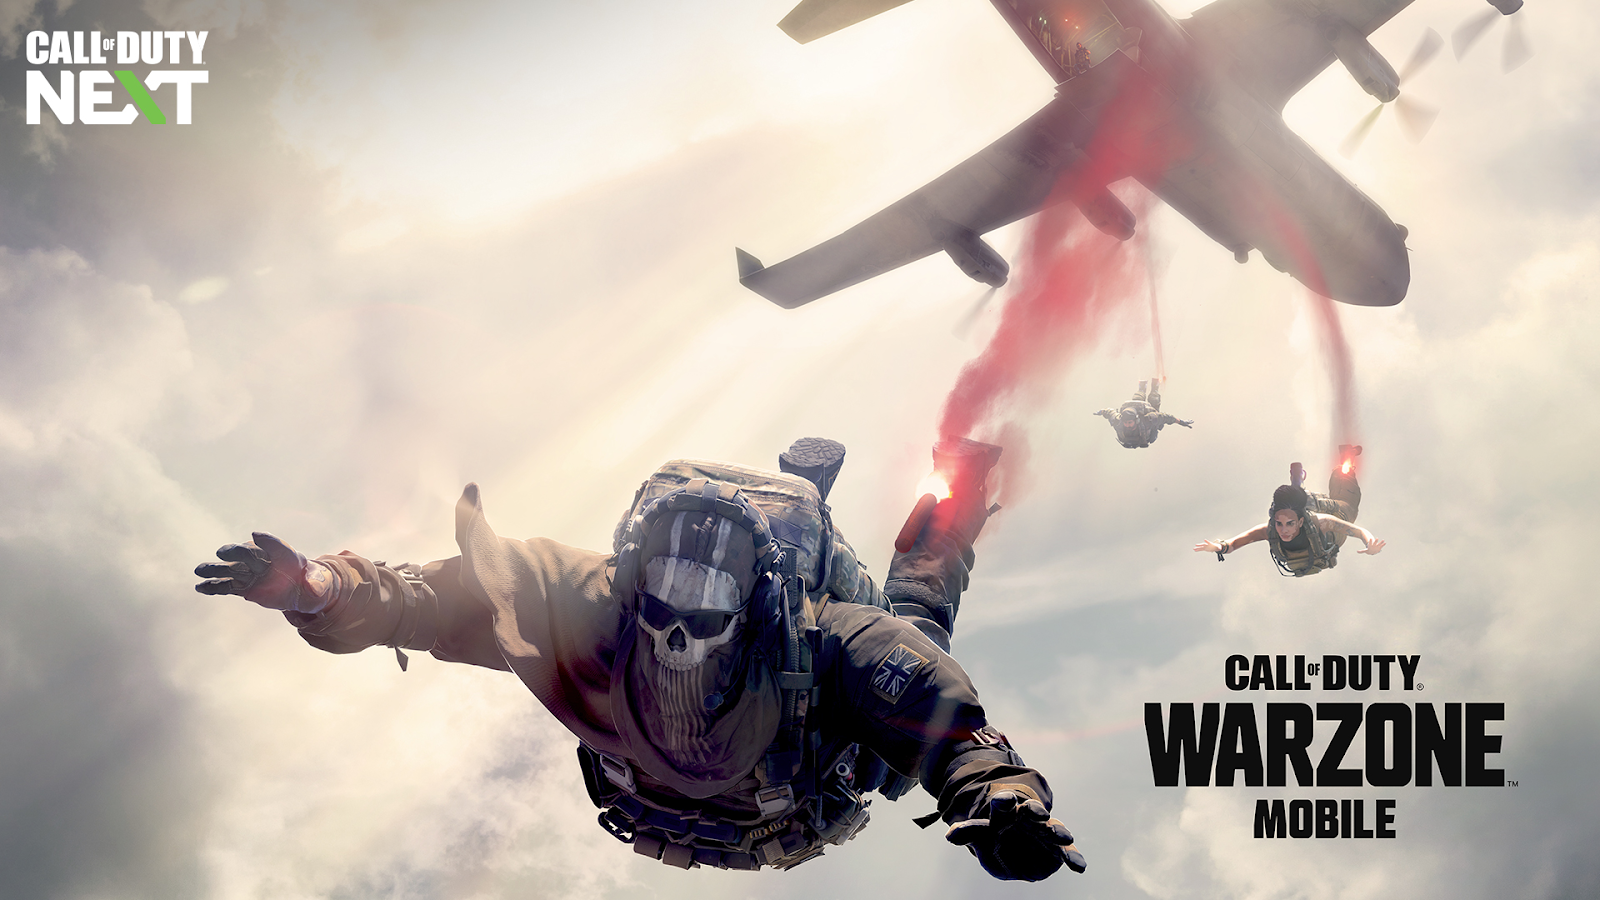 Jogo: Call of Duty®: Warzone™ 2.0 - Gratuito.